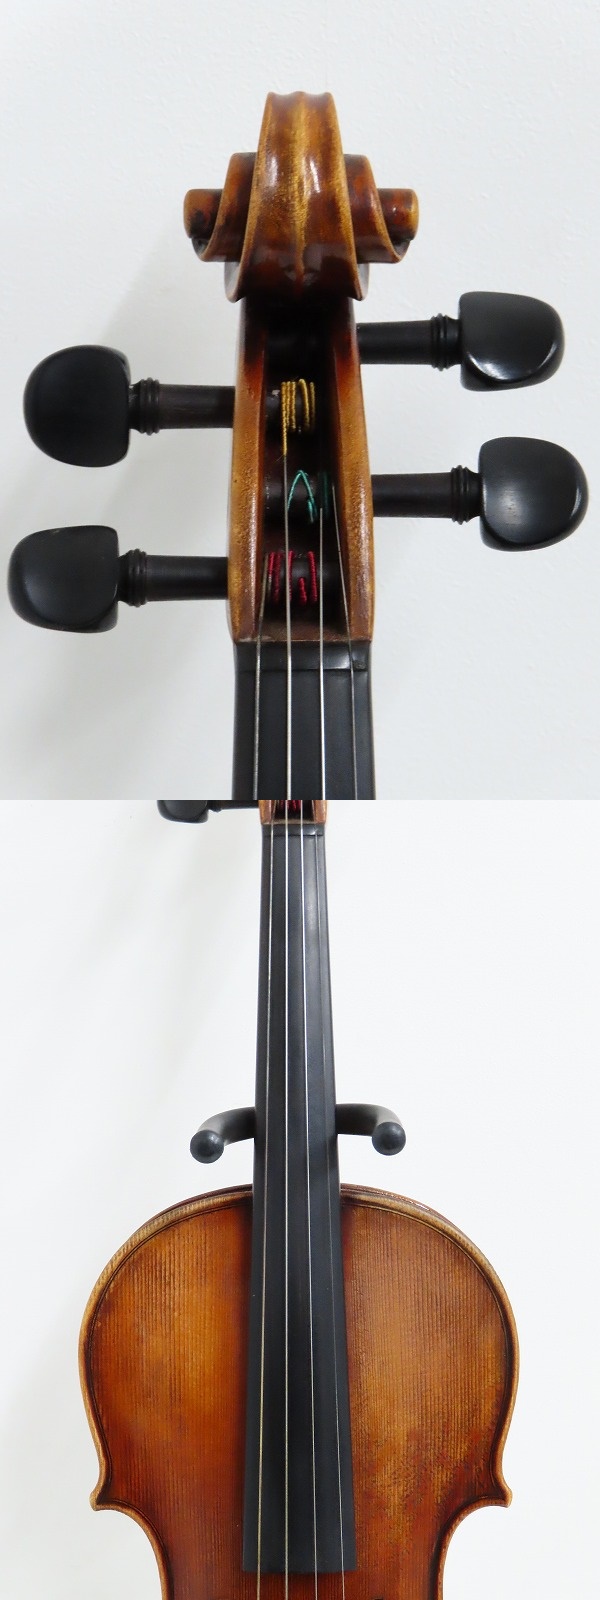 バイオリン顎当て CROWSON クローソン あご当て ローズウッド オールド 画像10枚掲載中 - 楽器、器材